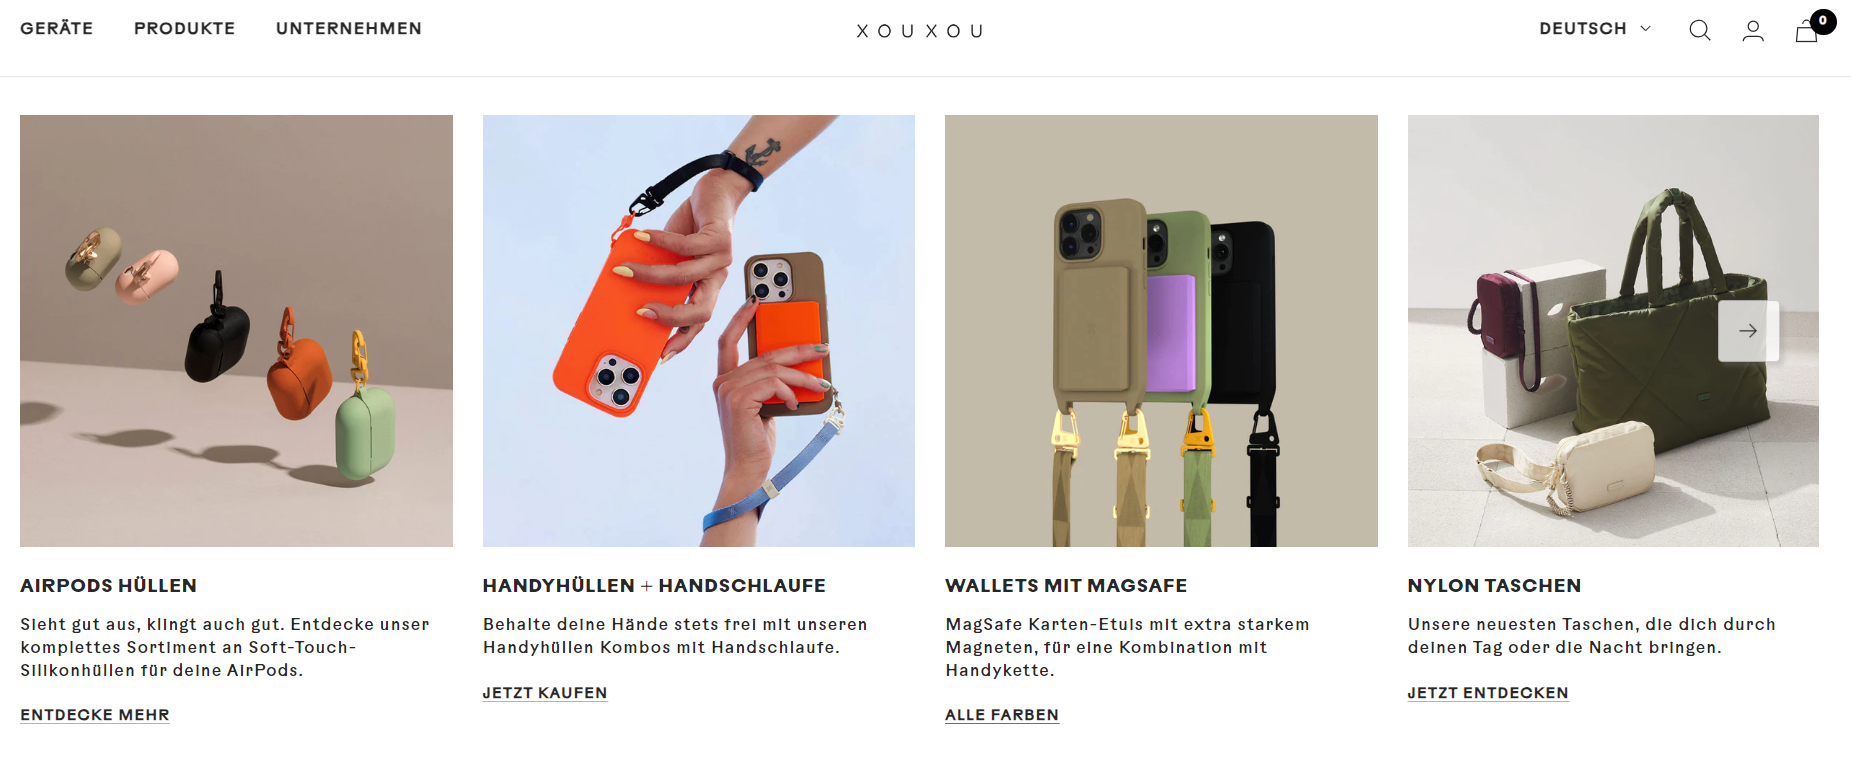 Die Homepage des Shopify Händlers XOUXOU, der weitere Produkte auf seiner Startseite präsentiert.